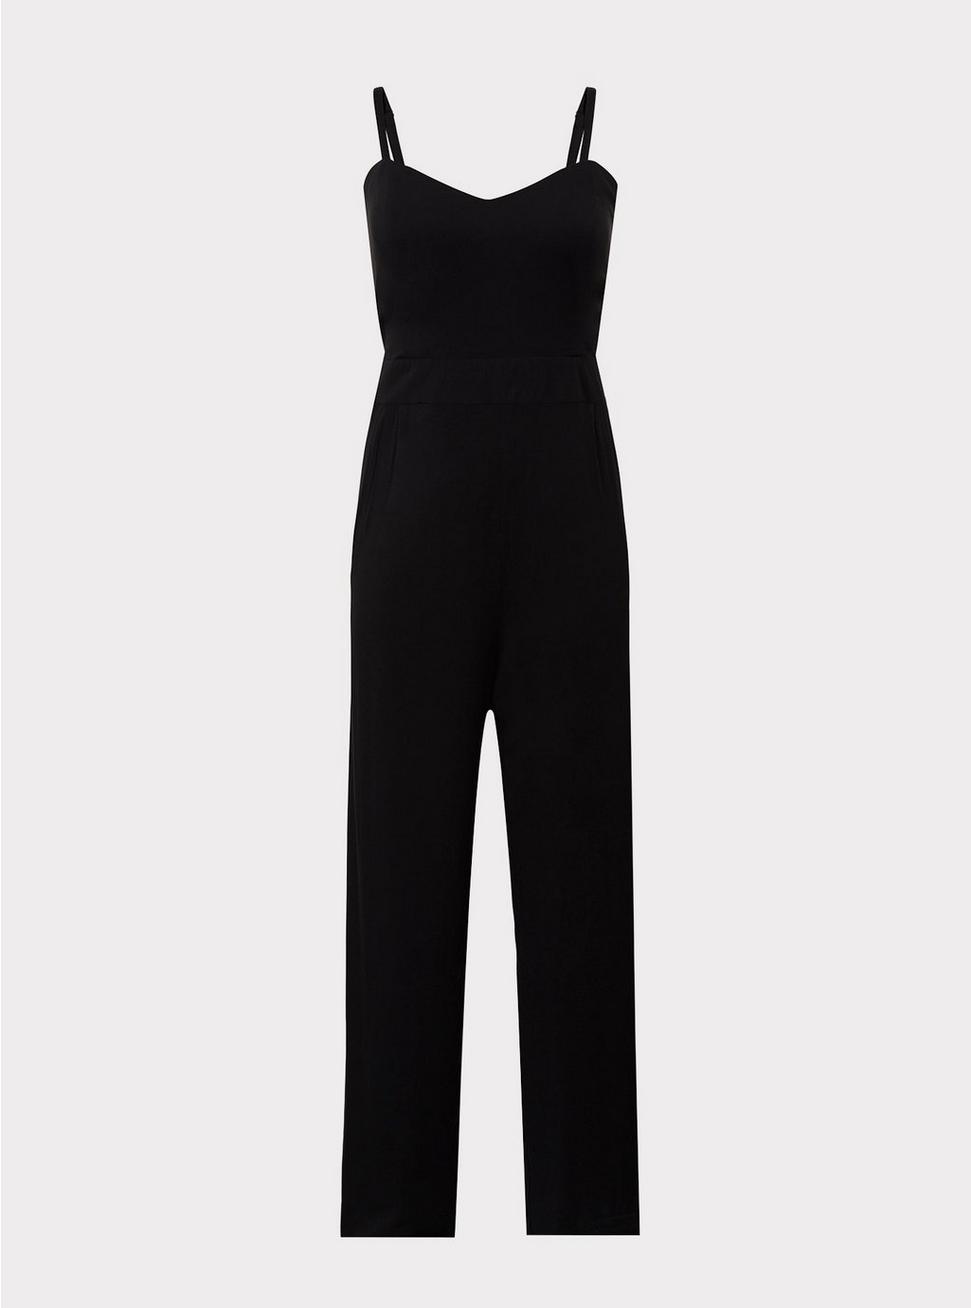 Plus Size - Black Challis Strapless Jumpsuit - Torrid